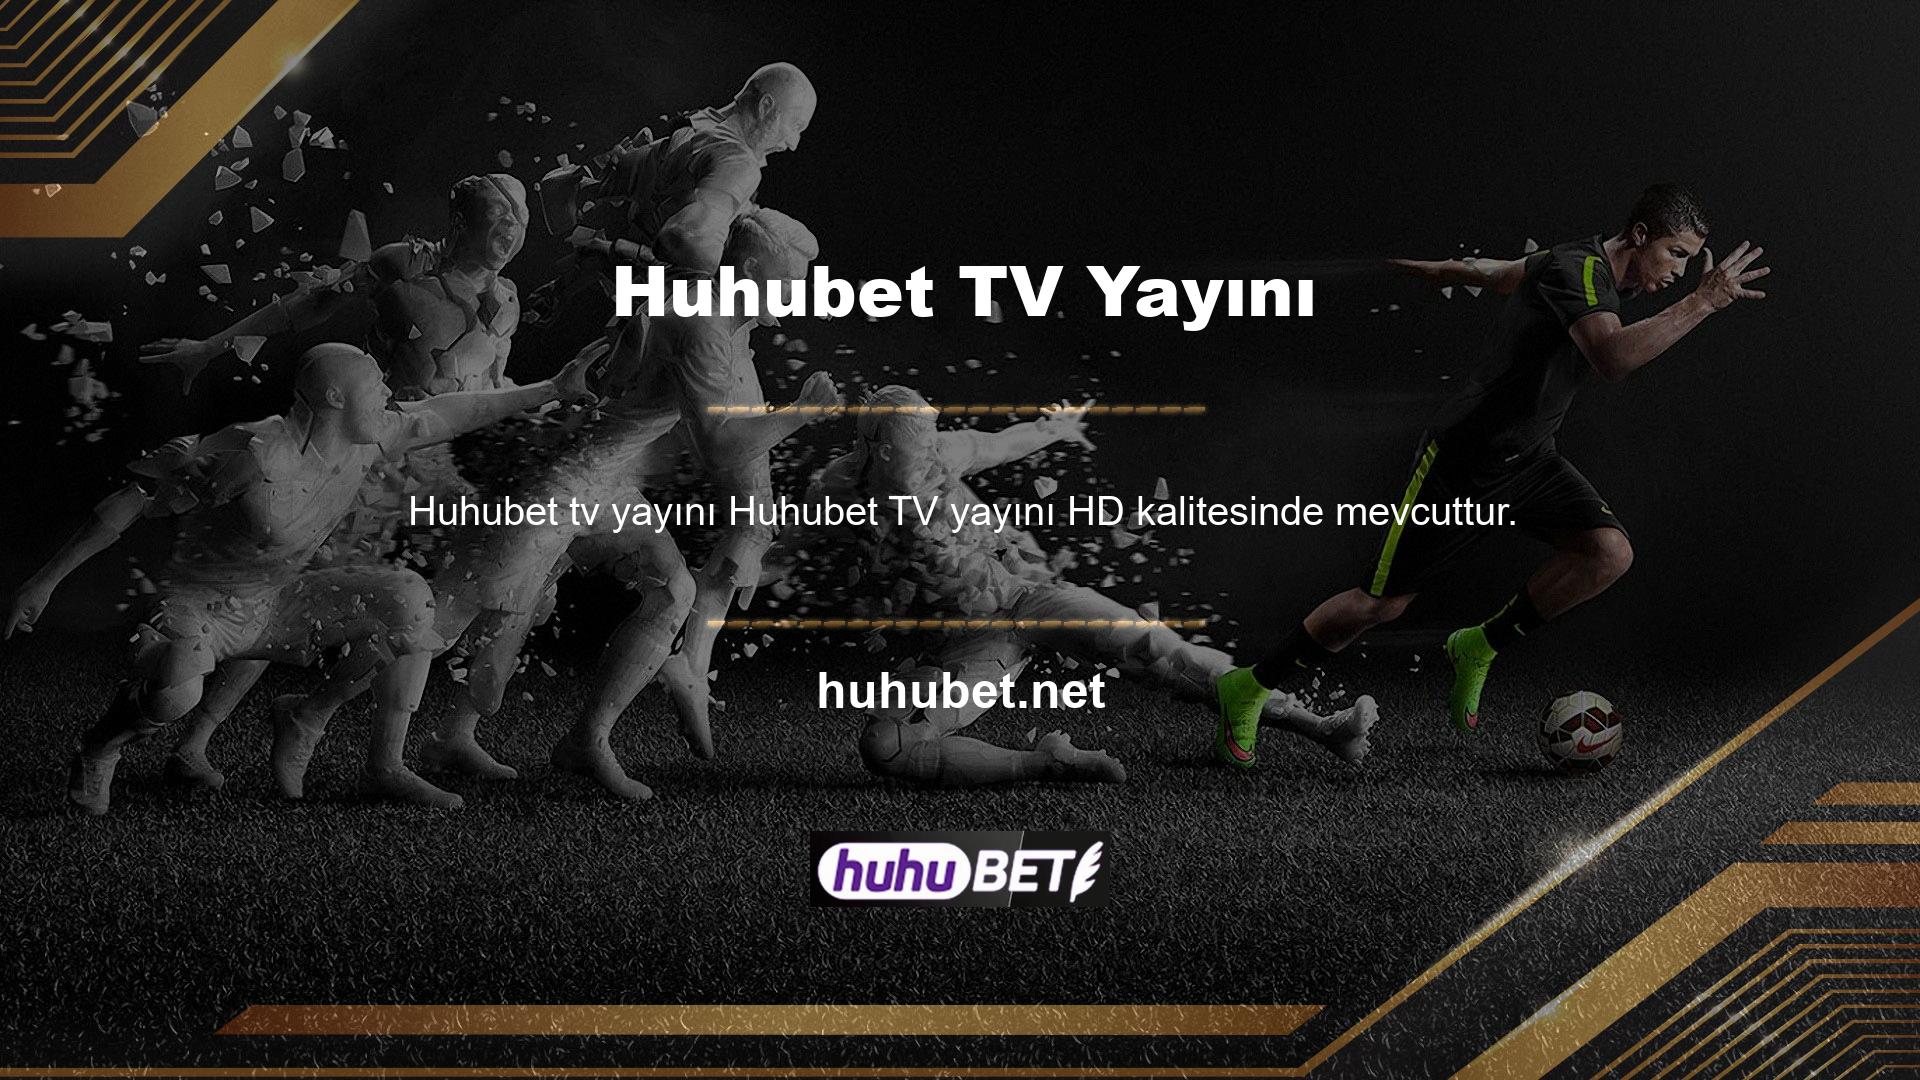 Huhubet TV web sitesi, kullanıcılara HD kalitesinde canlı yayın ve yayın seçenekleri sunuyor